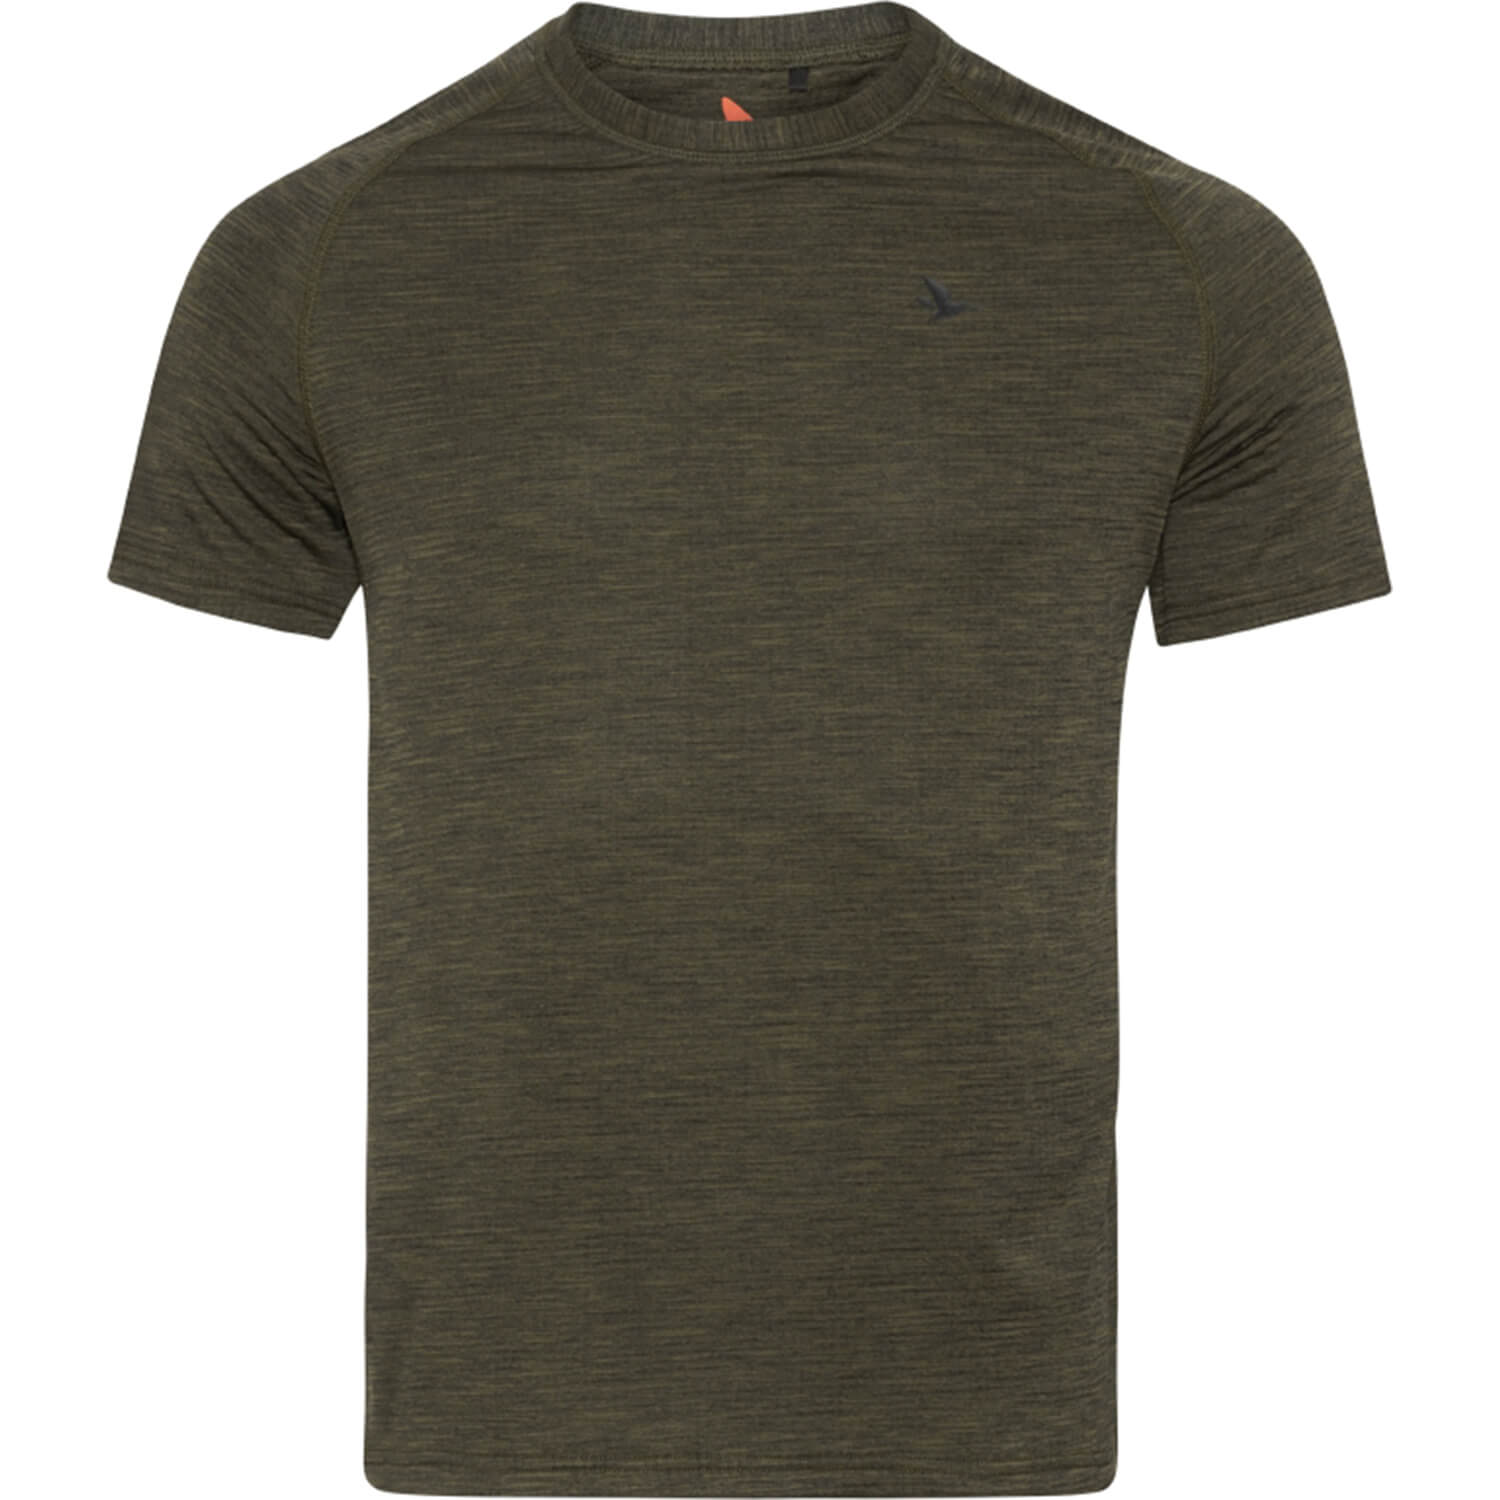 Seeland T-Shirt Active - Hemden & Shirts